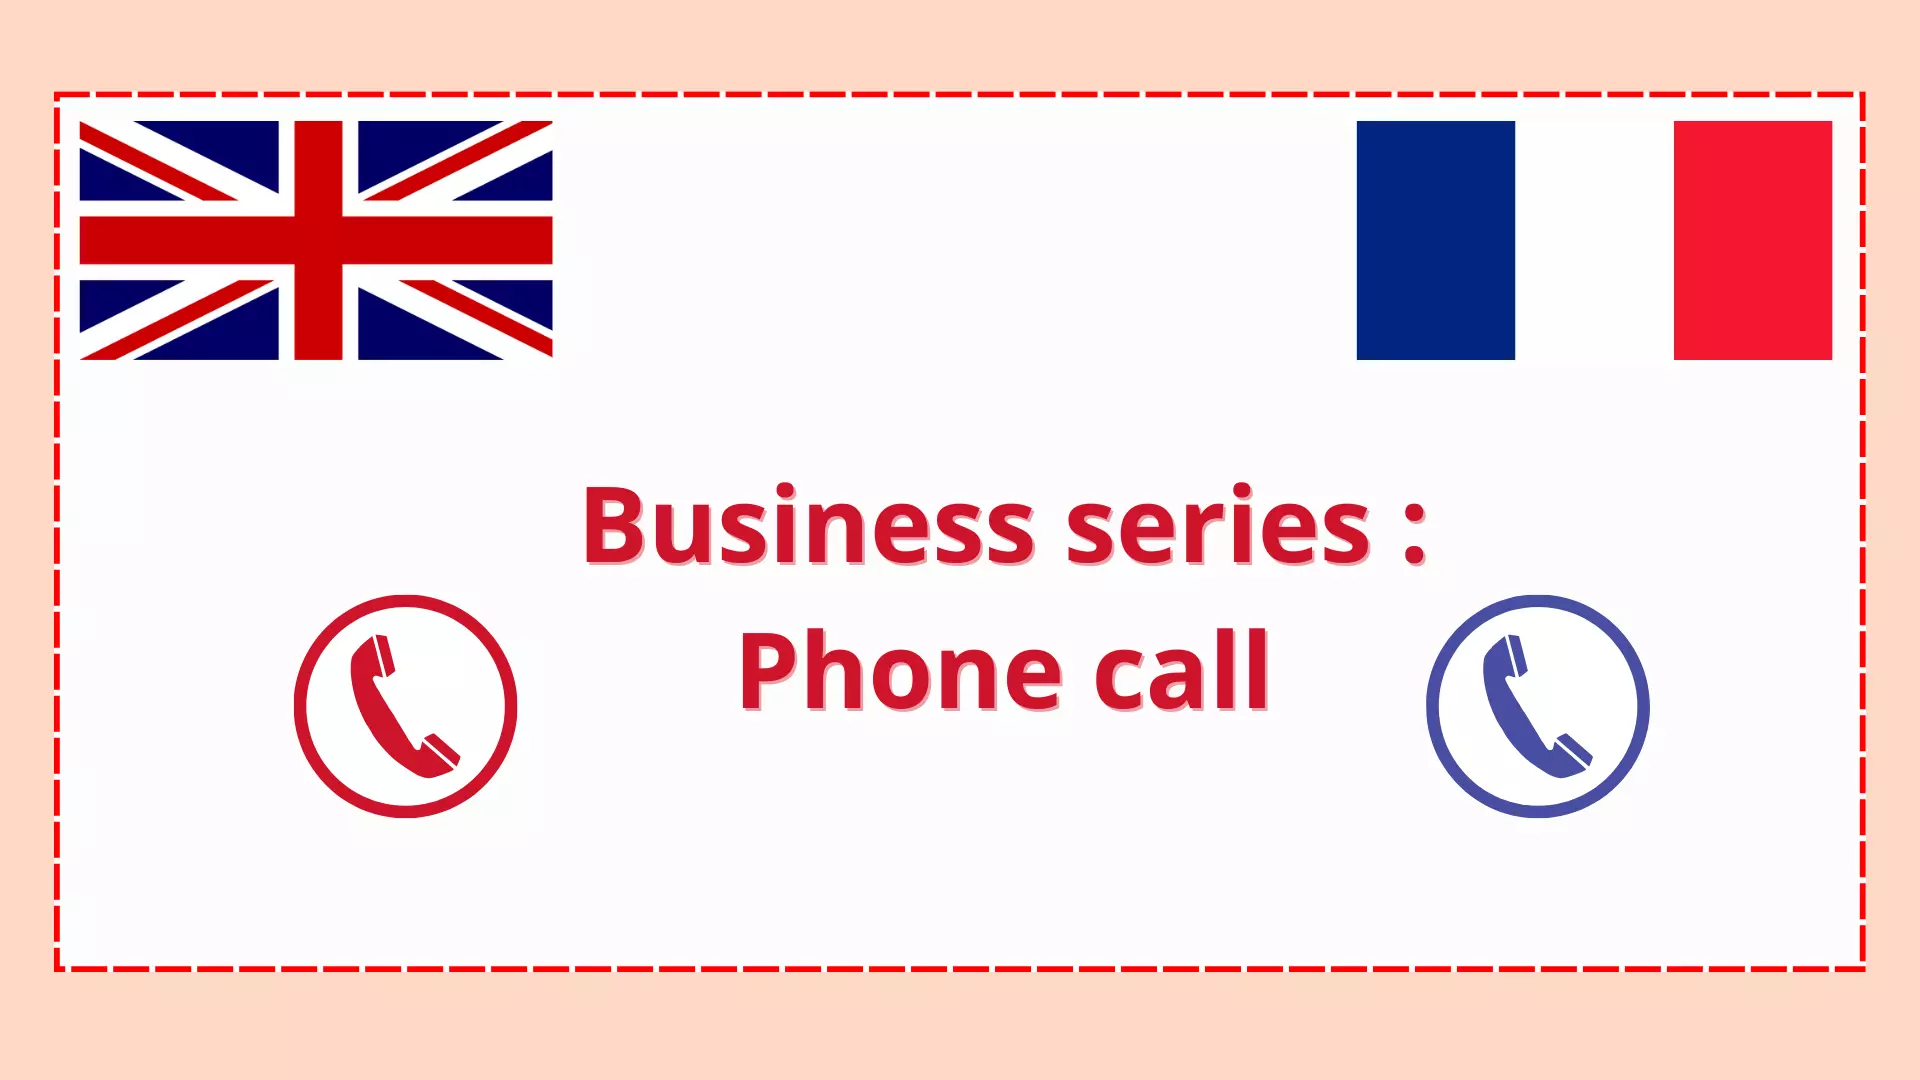 Ce visuel contient un drapeau anglais et un drapeau français ainsi que le titre de la "business serie" : Phone Call